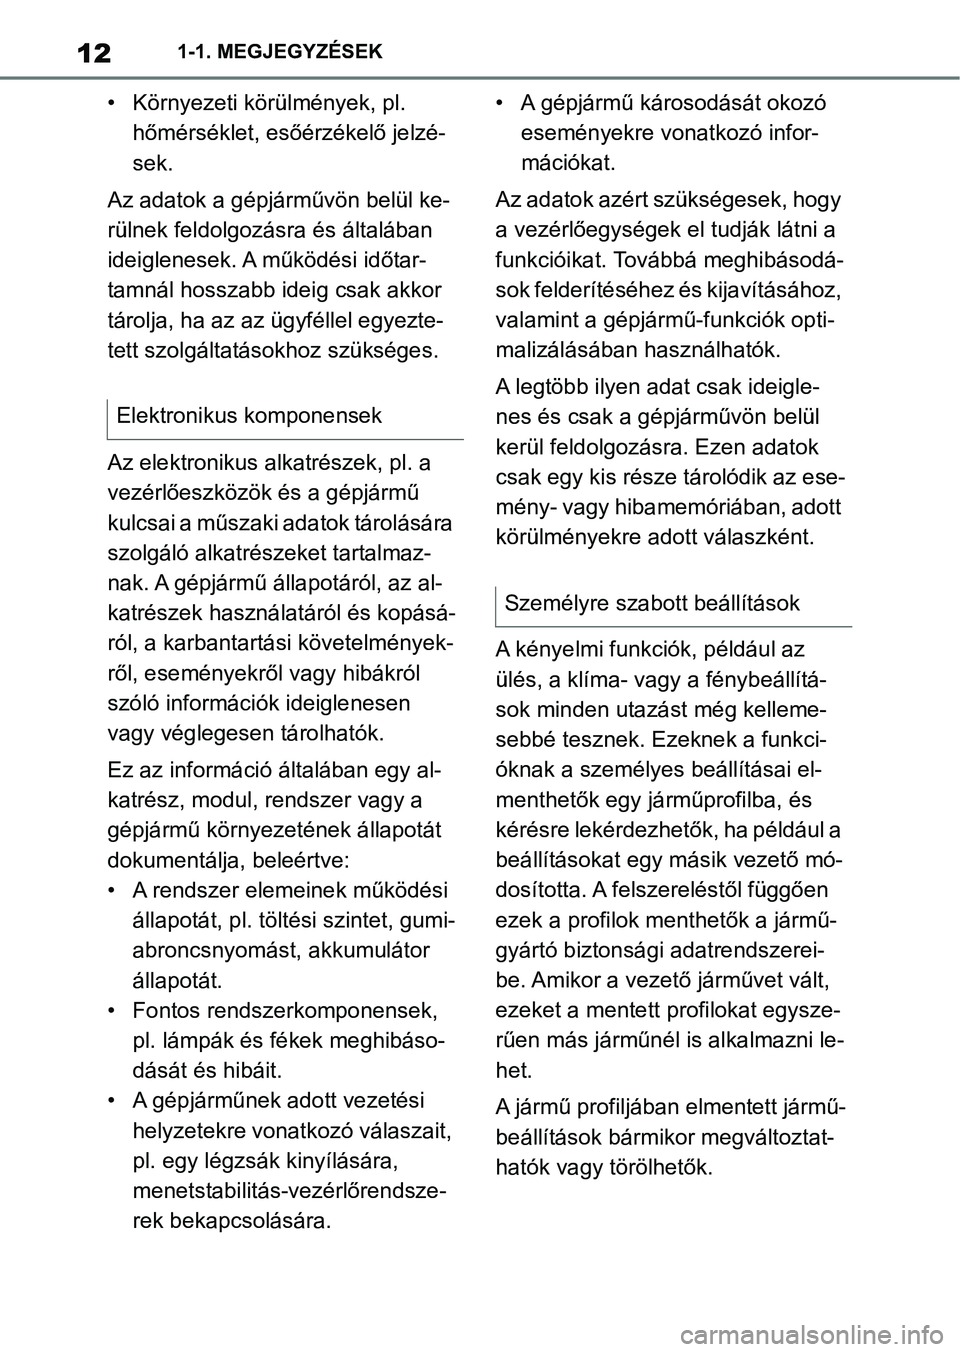 TOYOTA SUPRA 2020  Kezelési útmutató (in Hungarian) 121-1. MEGJEGYZÉSEK
• Környezeti körülmények, pl. hőmérséklet, esőér zékelő jelzé-
sek.
Az adatok a gépjárművön belül ke-
rülnek feldolgozásra és általában 
ideiglenesek. A m�